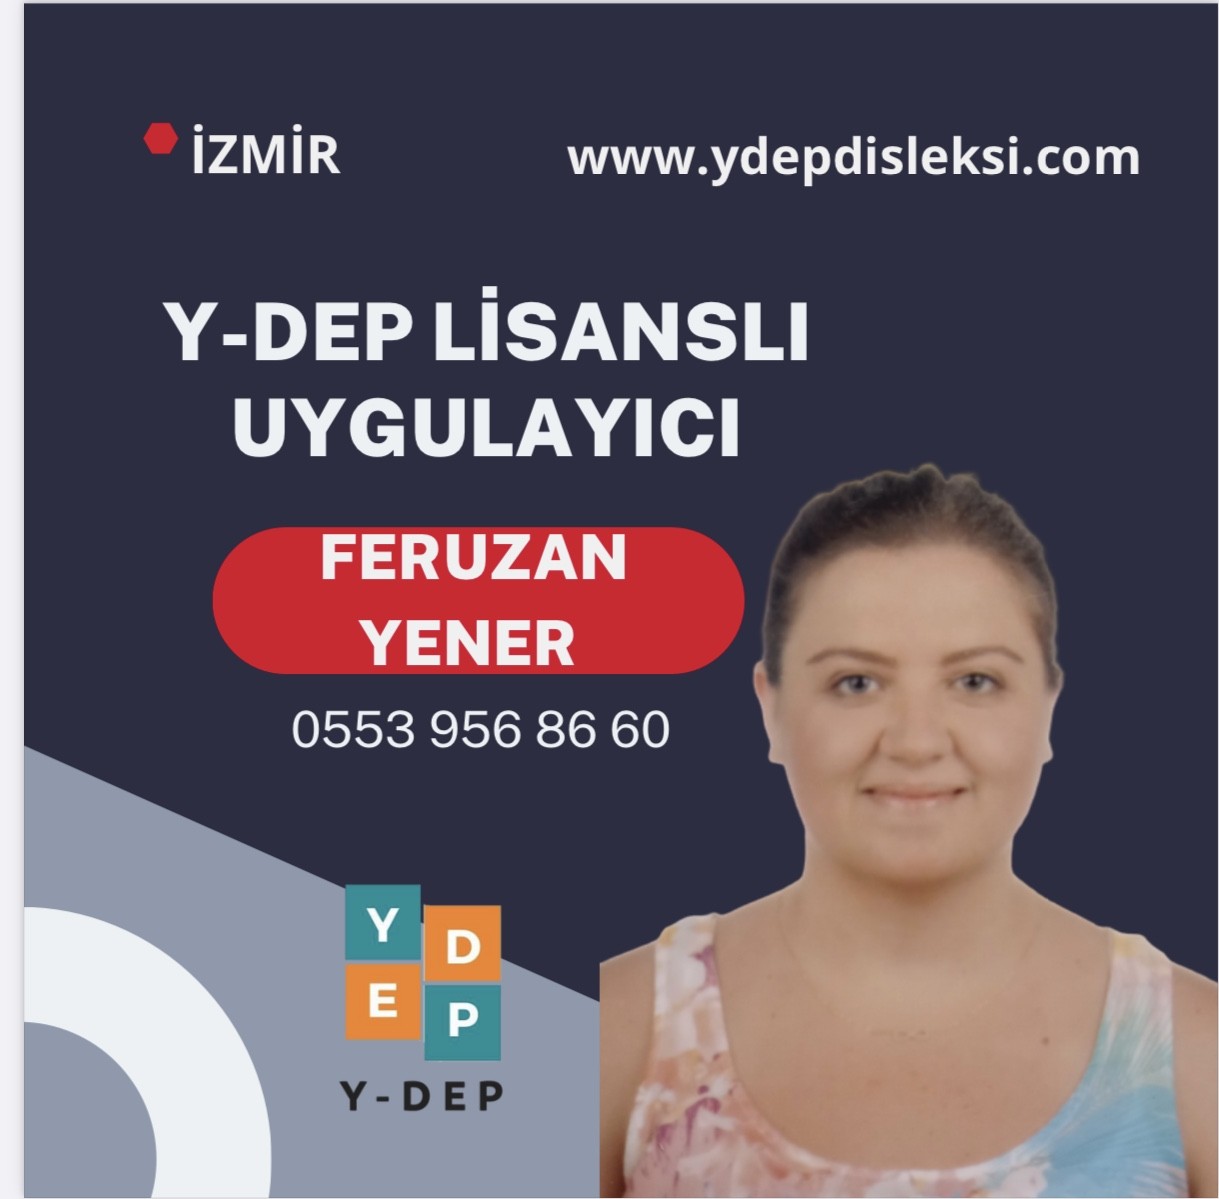 Feruzan YENER / Y-DEP Uygulayıcısı